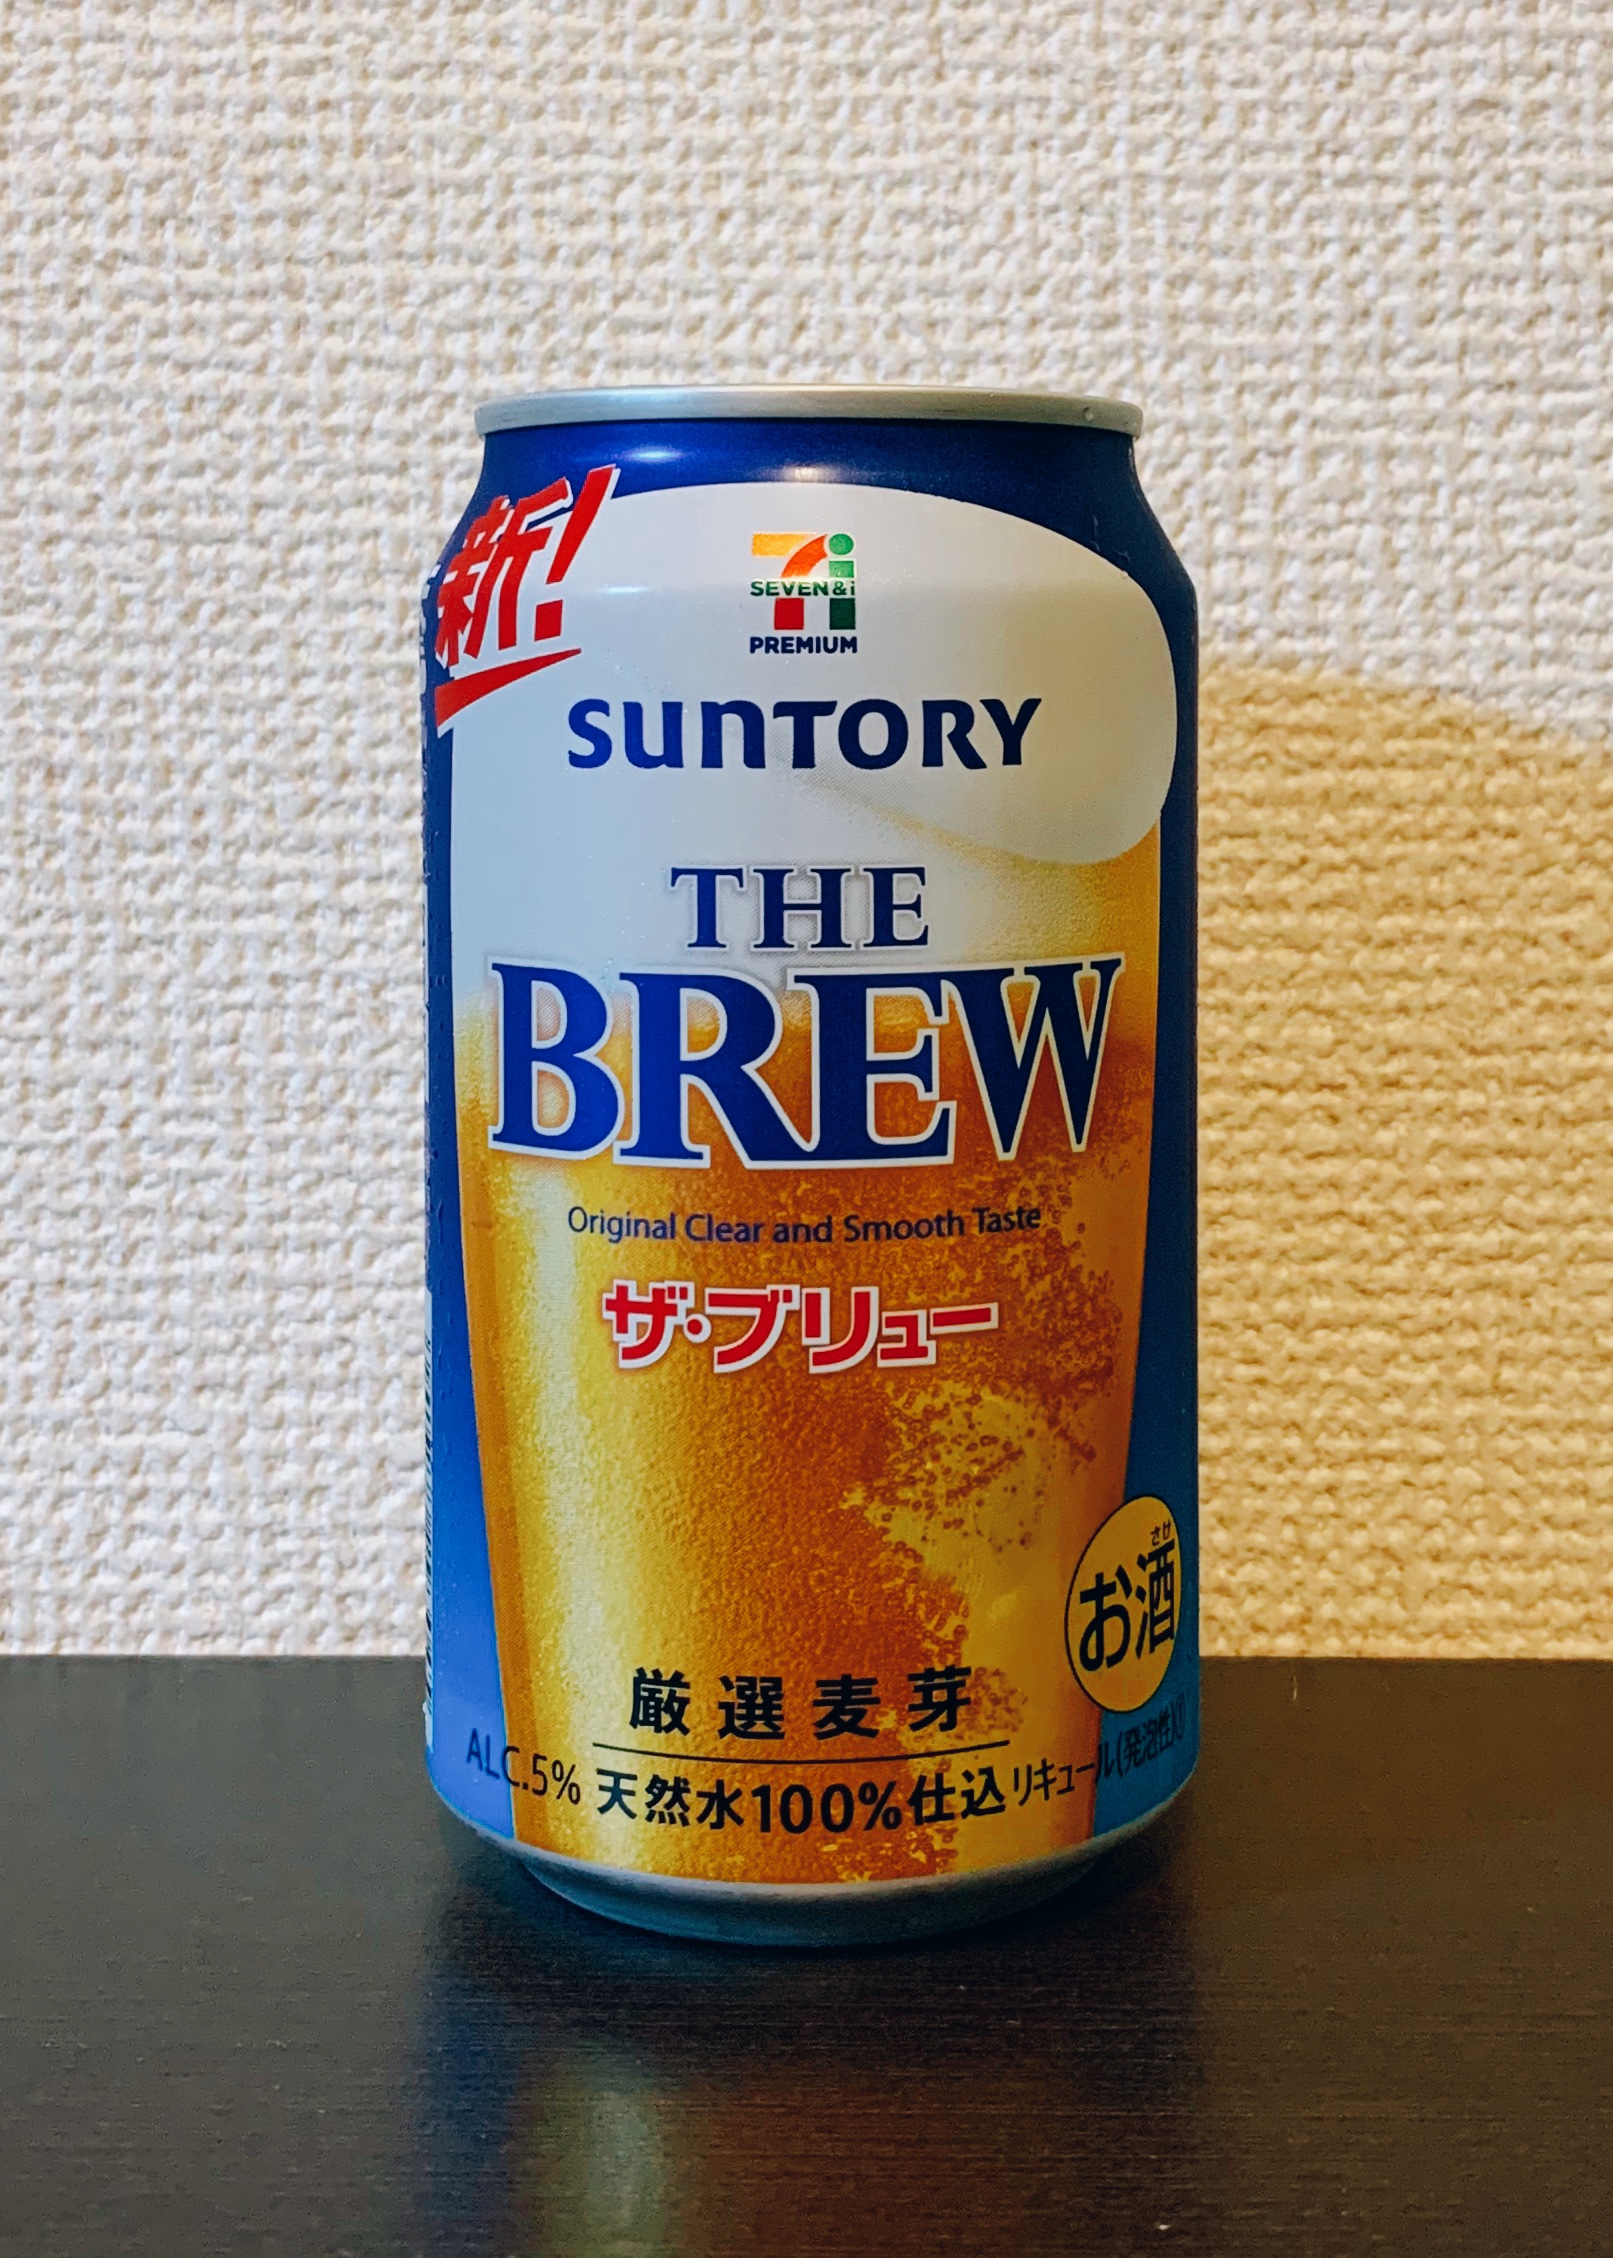 家飲み拡大で人気のビール系新ジャンル プライベートブランド6品を比較検証 - 日本食糧新聞電子版